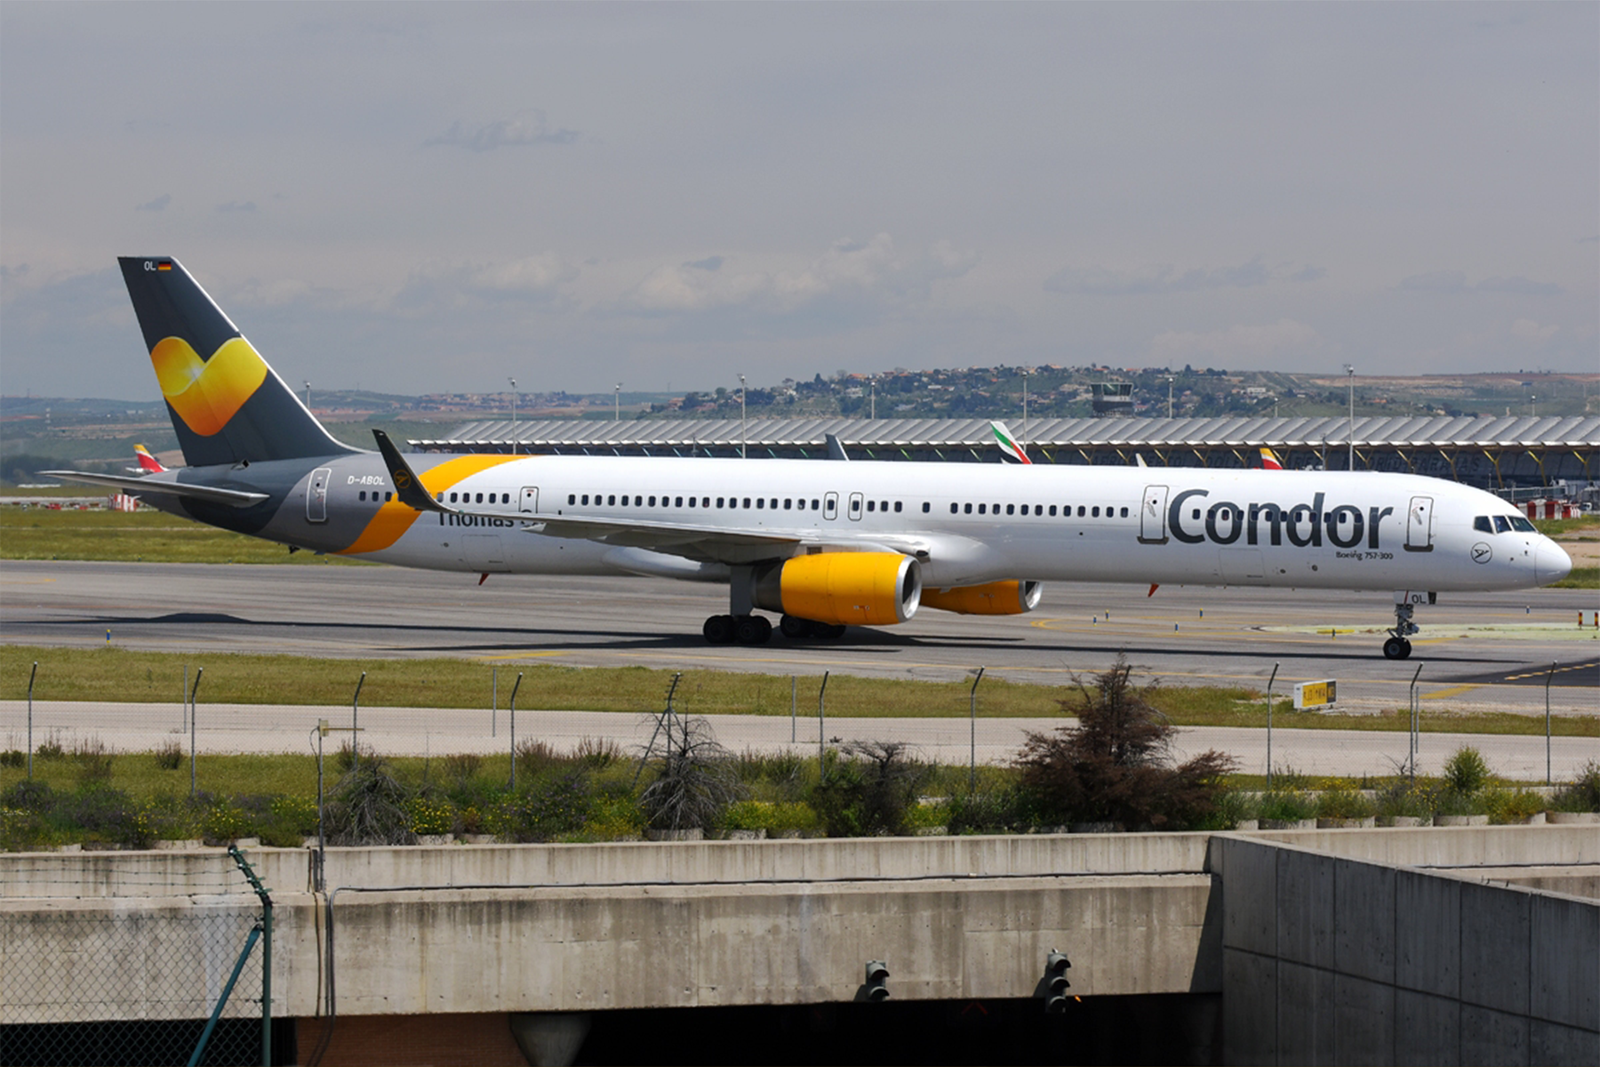 757-300 de Condor en el aeropuerto de Barajas. Foto: Alberto González